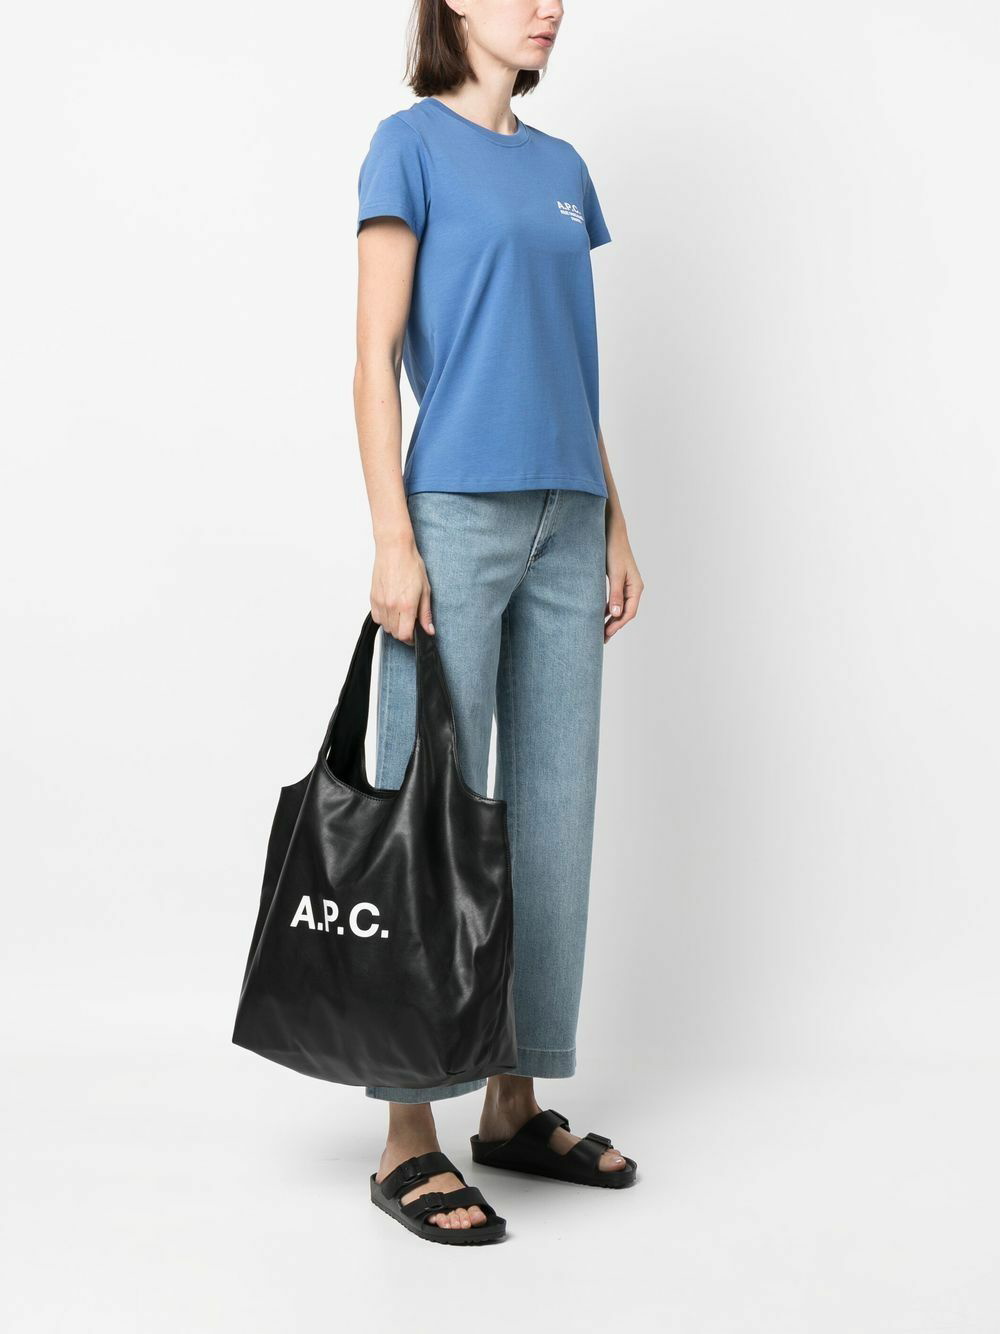 A.P.C. - Ninon Bag A.P.C.